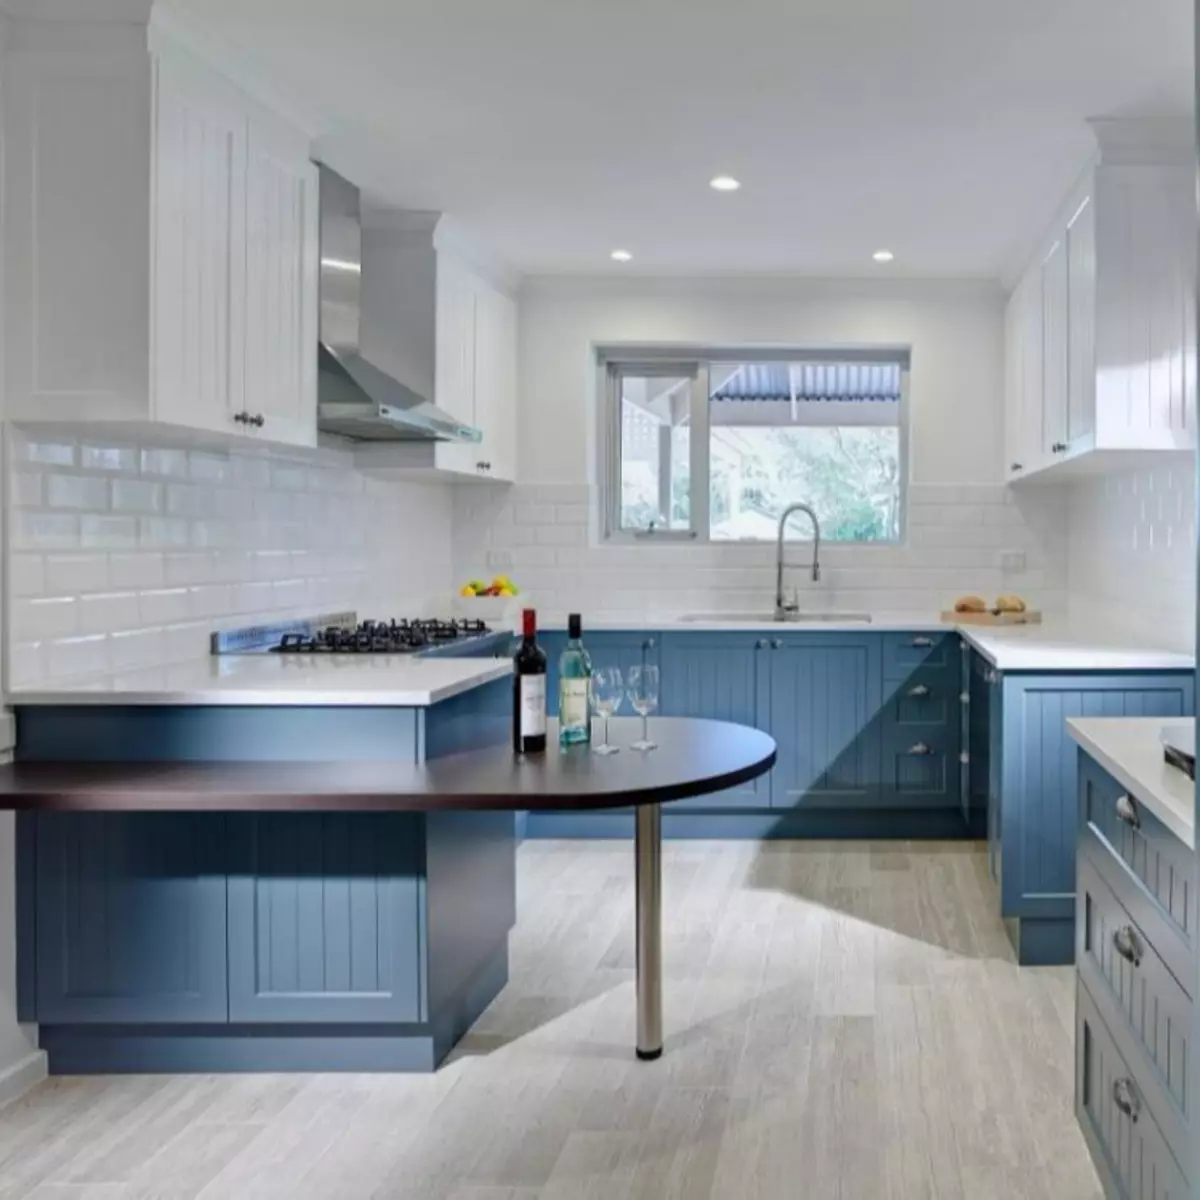 وائٹ بلیو باورچی خانے (64 فوٹو): باورچی داخلہ ڈیزائن کے لئے سفید نیلے رنگ میں باورچی خانے کے ہیڈسیٹ کی خصوصیات، اسی طرح کے رنگوں میں دیواروں پر تلفظ 9393_18